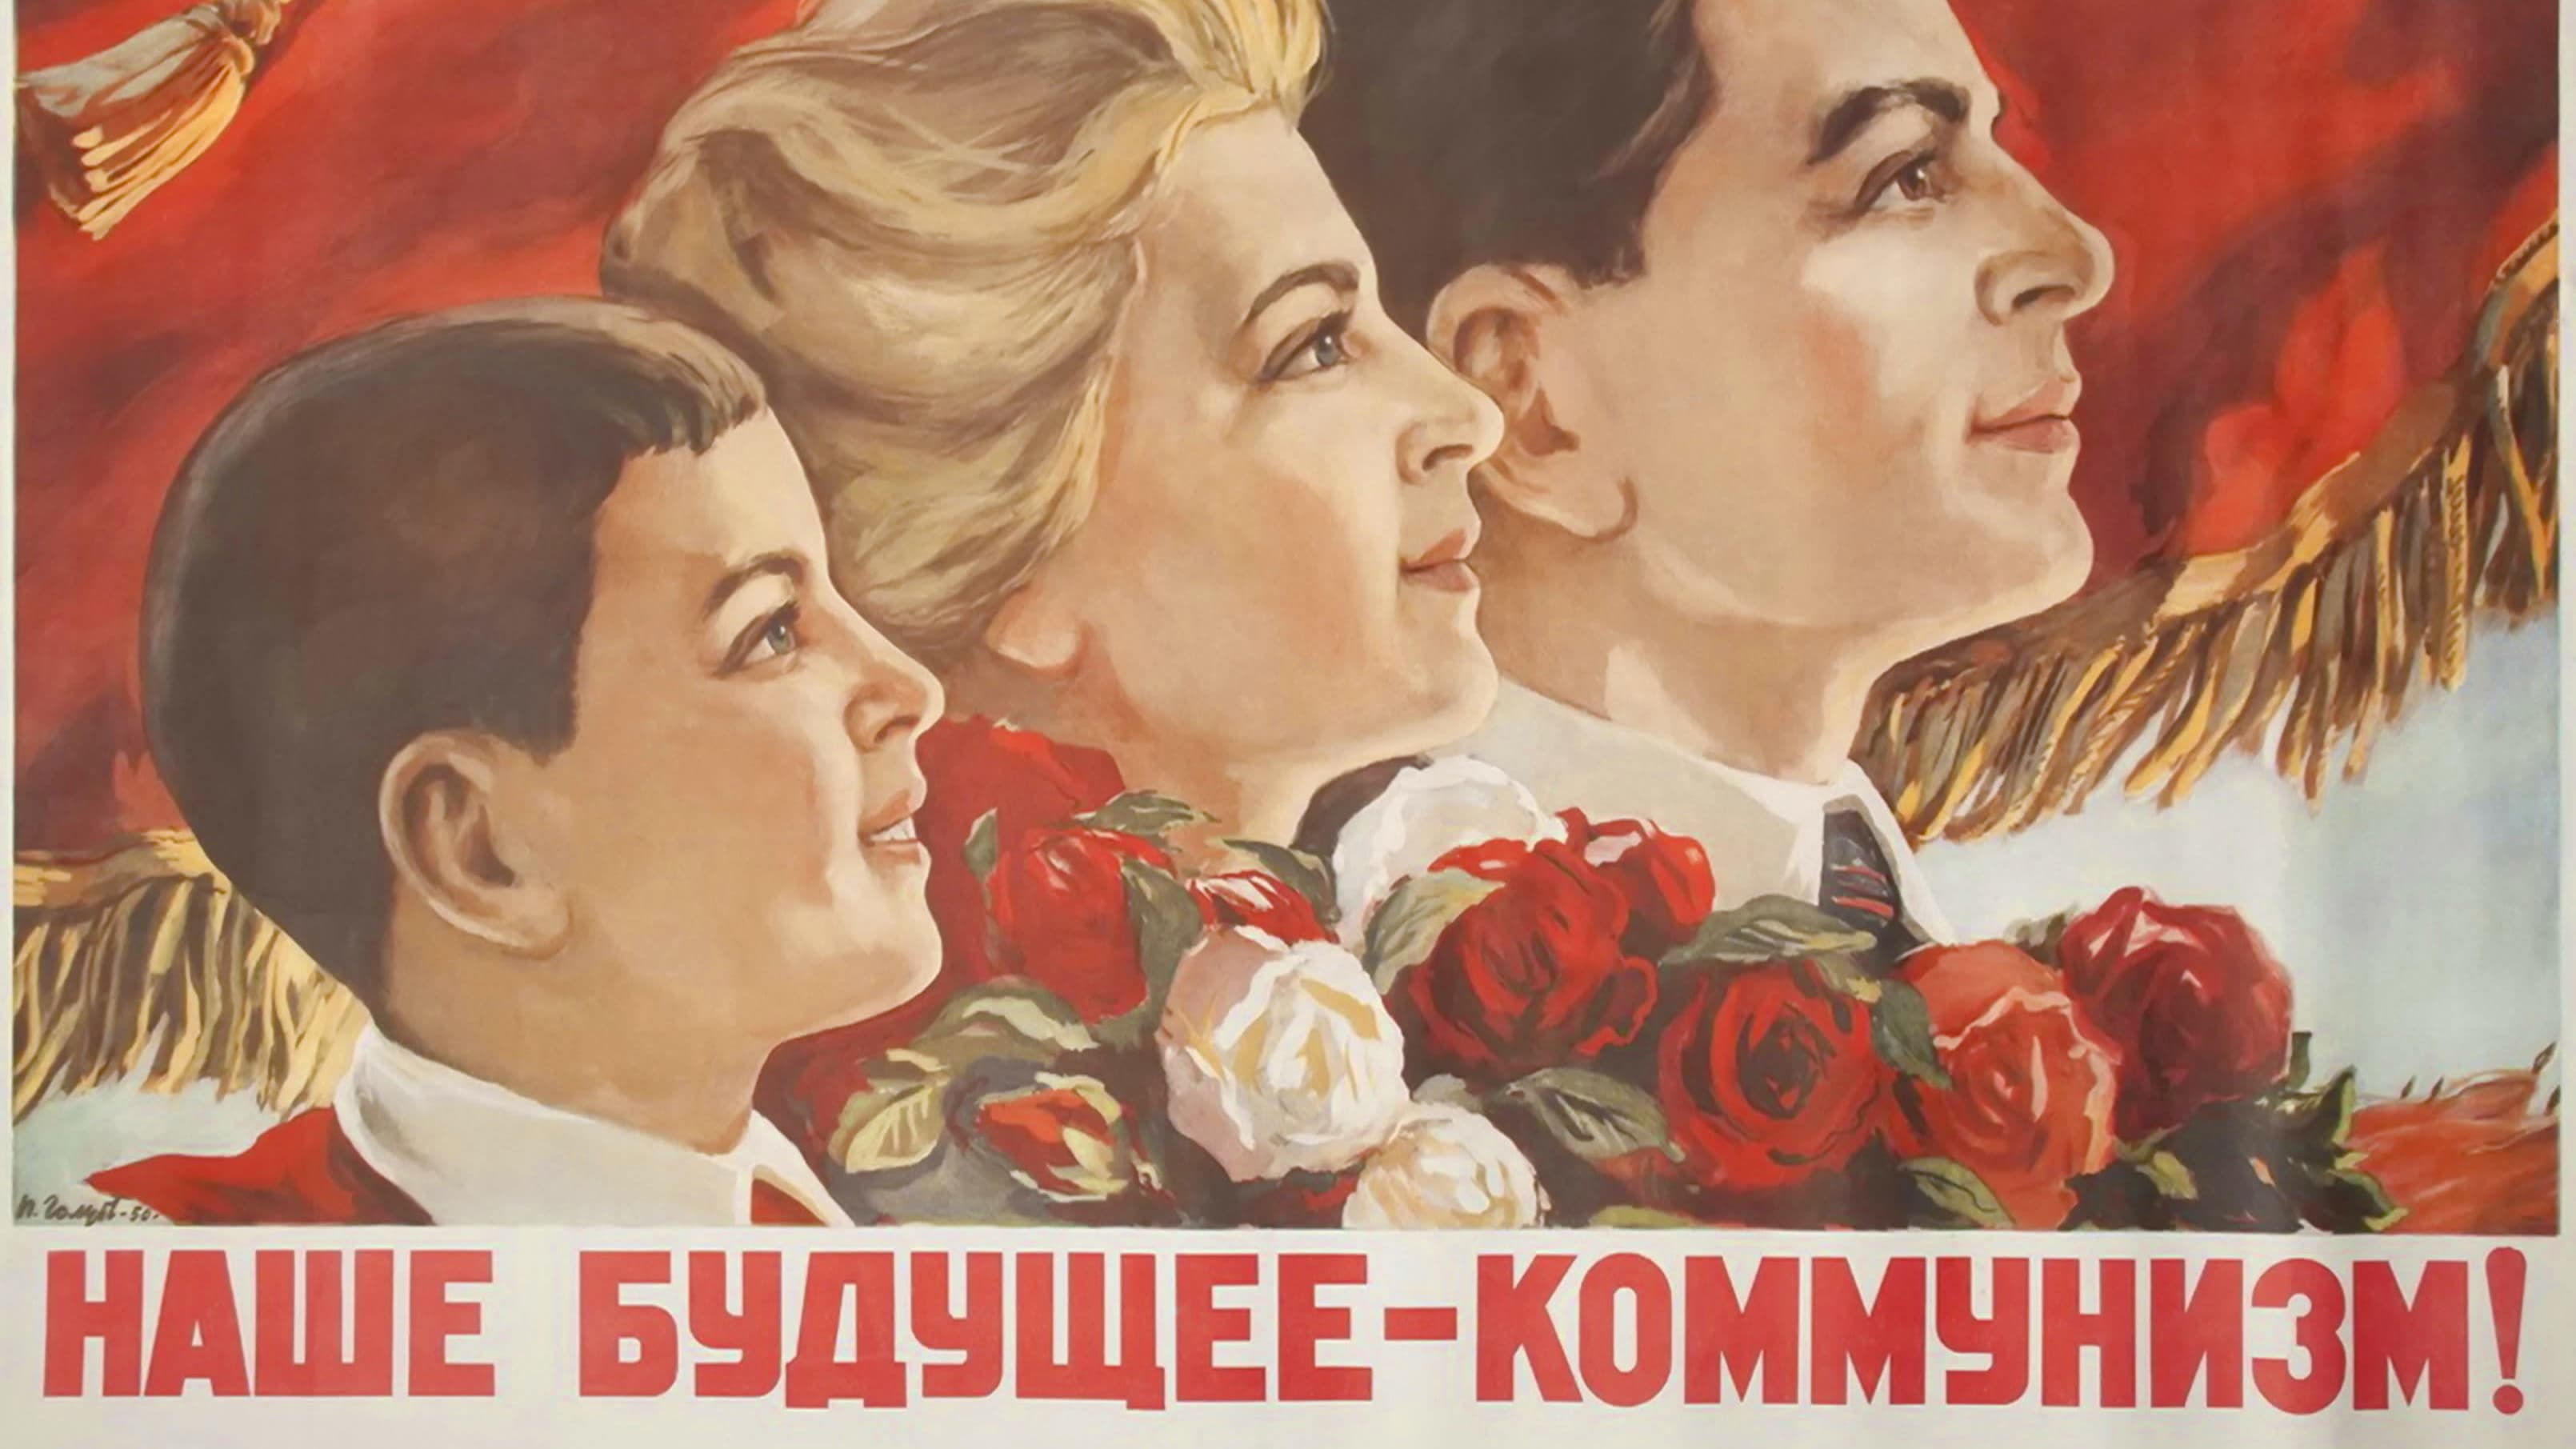 Propagandajulisteessa on piirretty ylpeästi ylöspäin katsova nuori perhe, punalippu taustalla. Venäjäkielisessä tekstissä sanotaan "Tulevaisuutemme on kommunismi!"